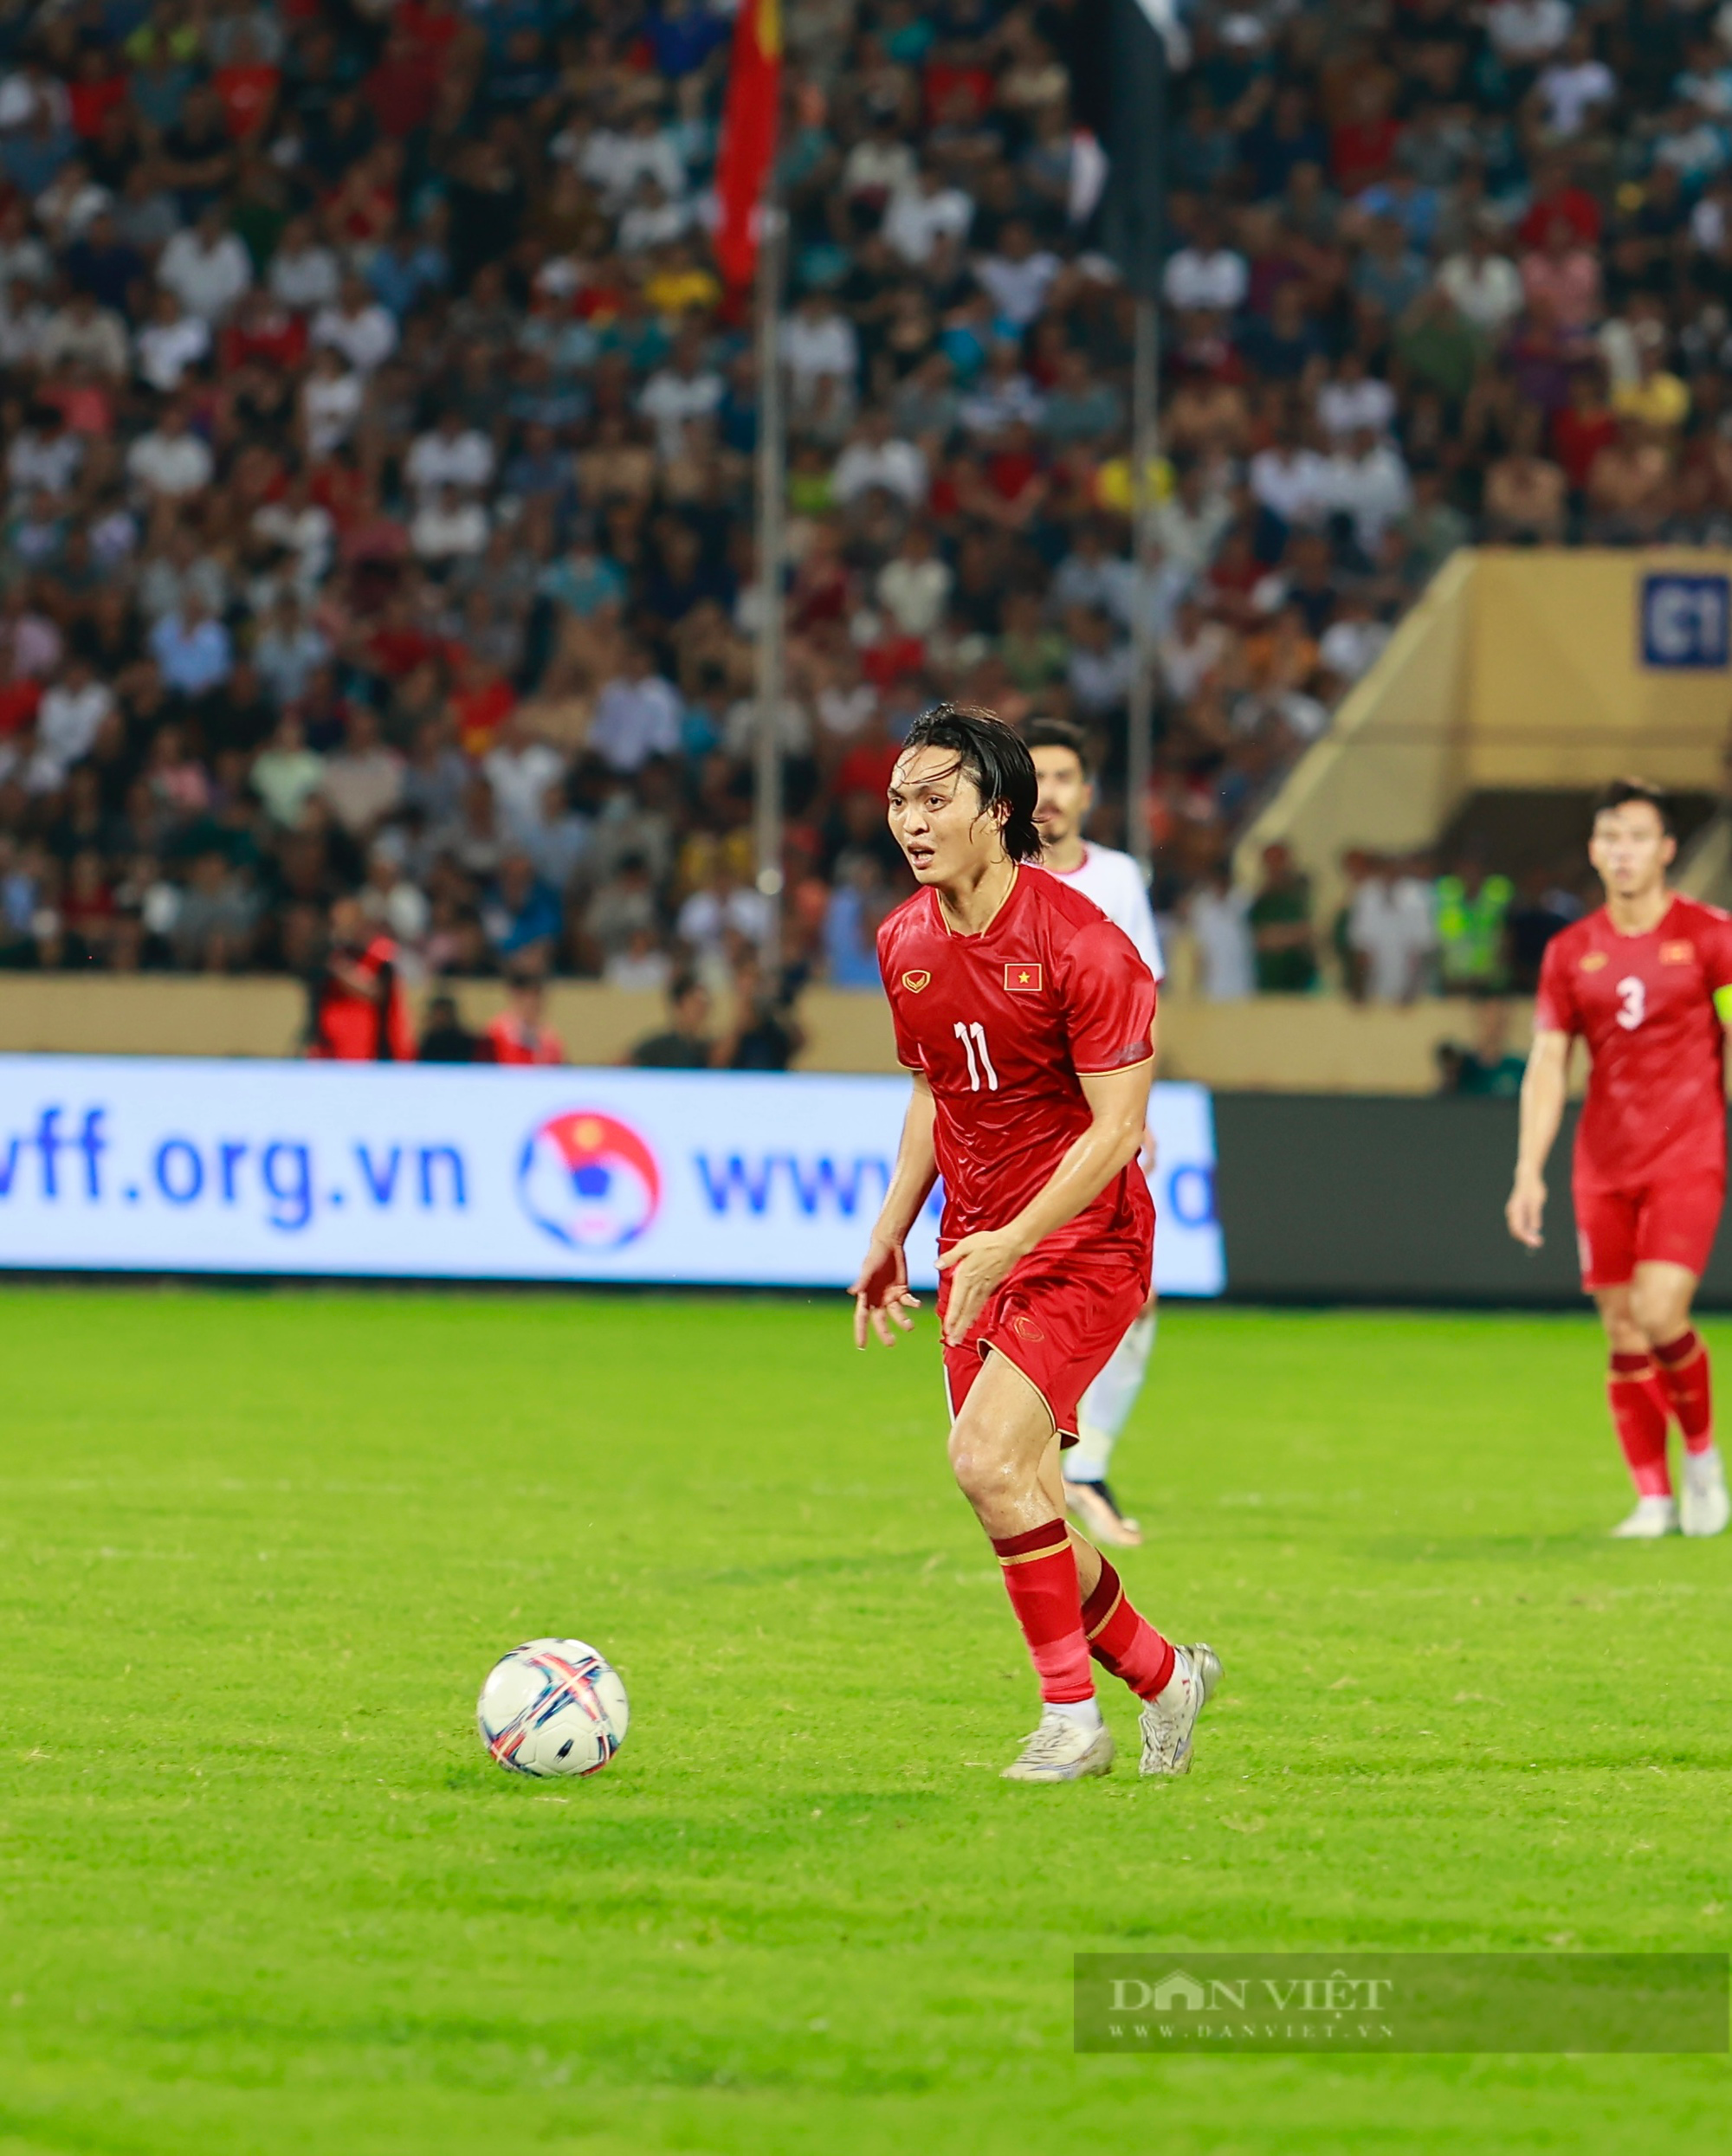 Tuấn Hải ghi bàn, ĐT Việt Nam có chiến thắng trước Syria - Ảnh 3.